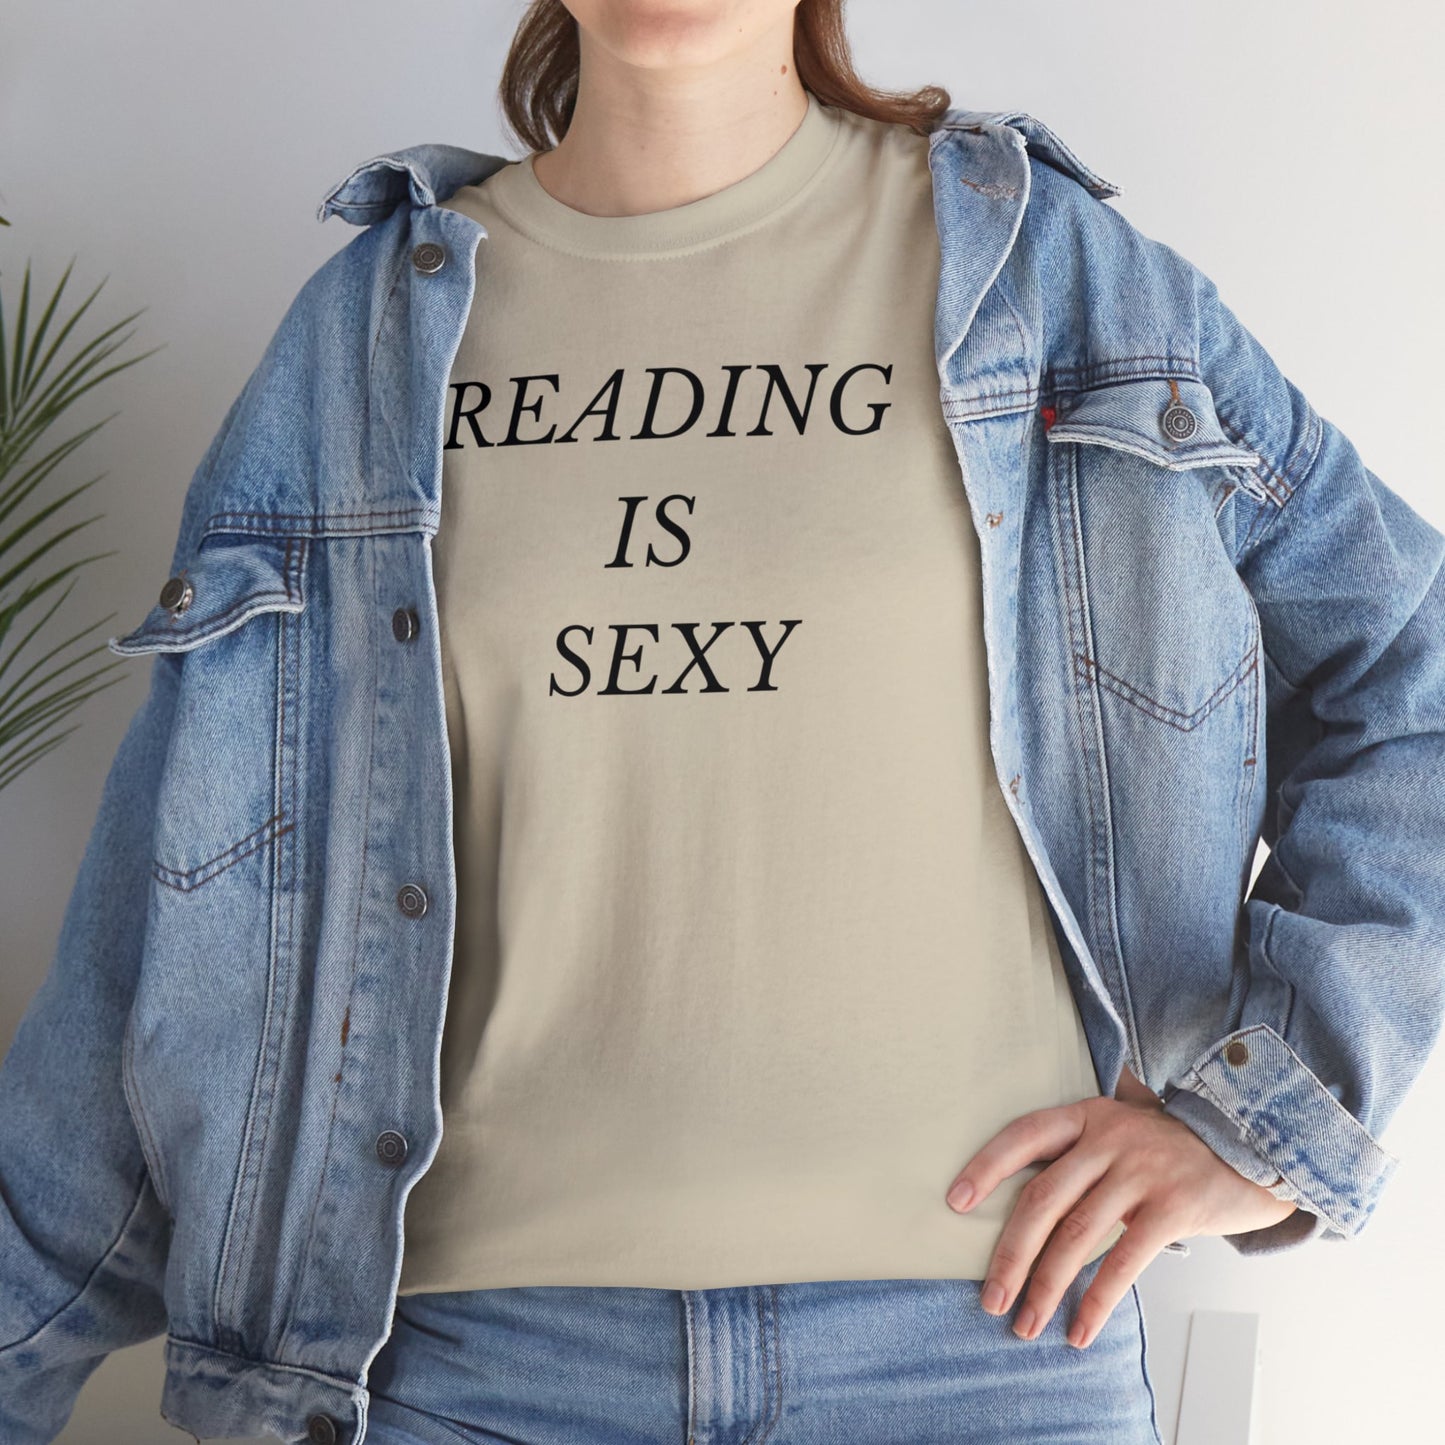 READING IS SEXY Unisex Tee